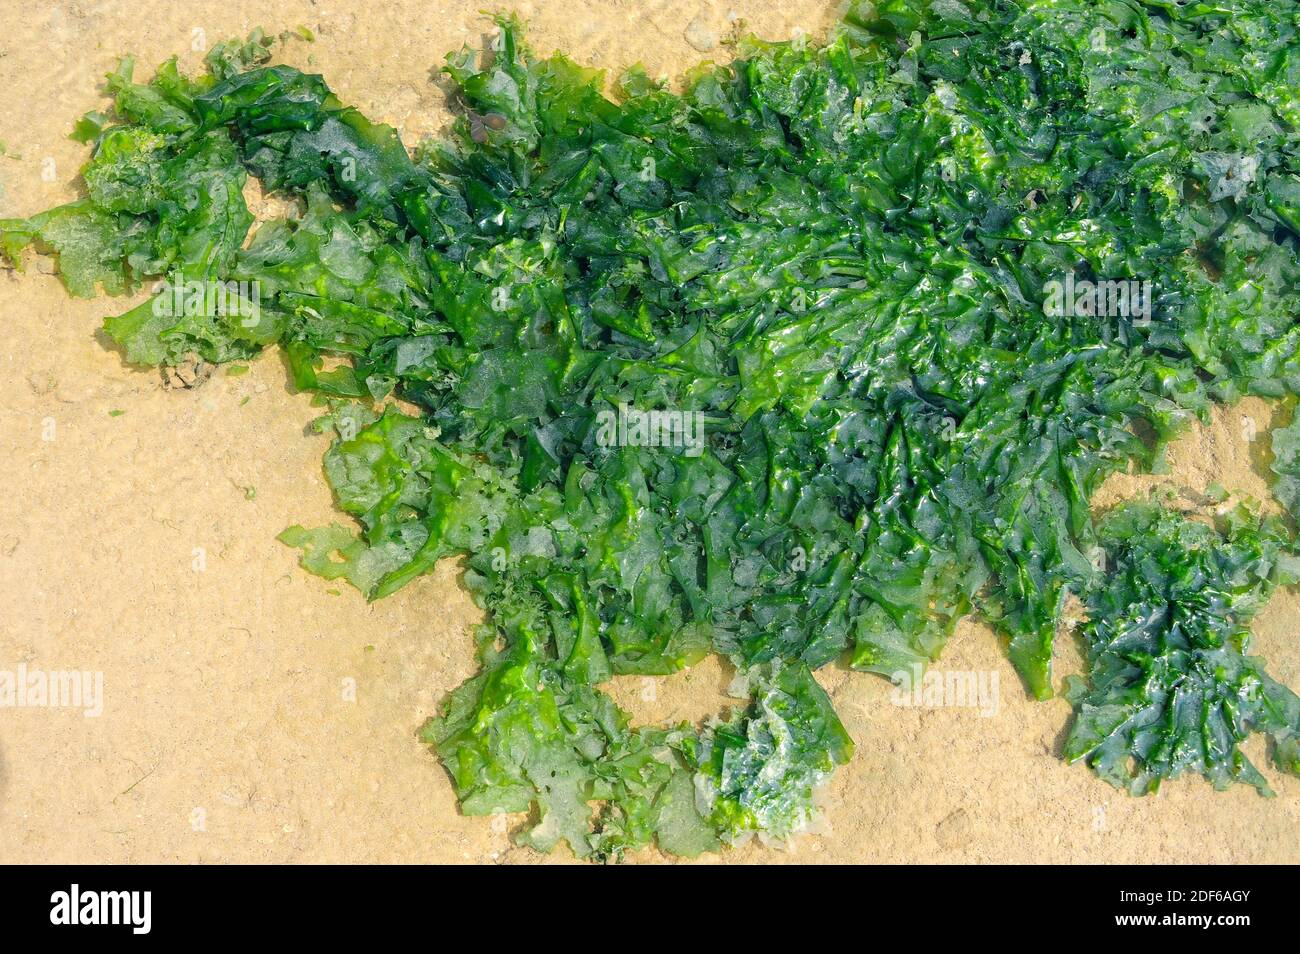 La lattuga marina (Ulva lactuca) è un'alga verde commestibile di distribuzione mondiale. Clorofita. Ulvales. Ulvaceae. Costa della Bretagna, Francia. Foto Stock